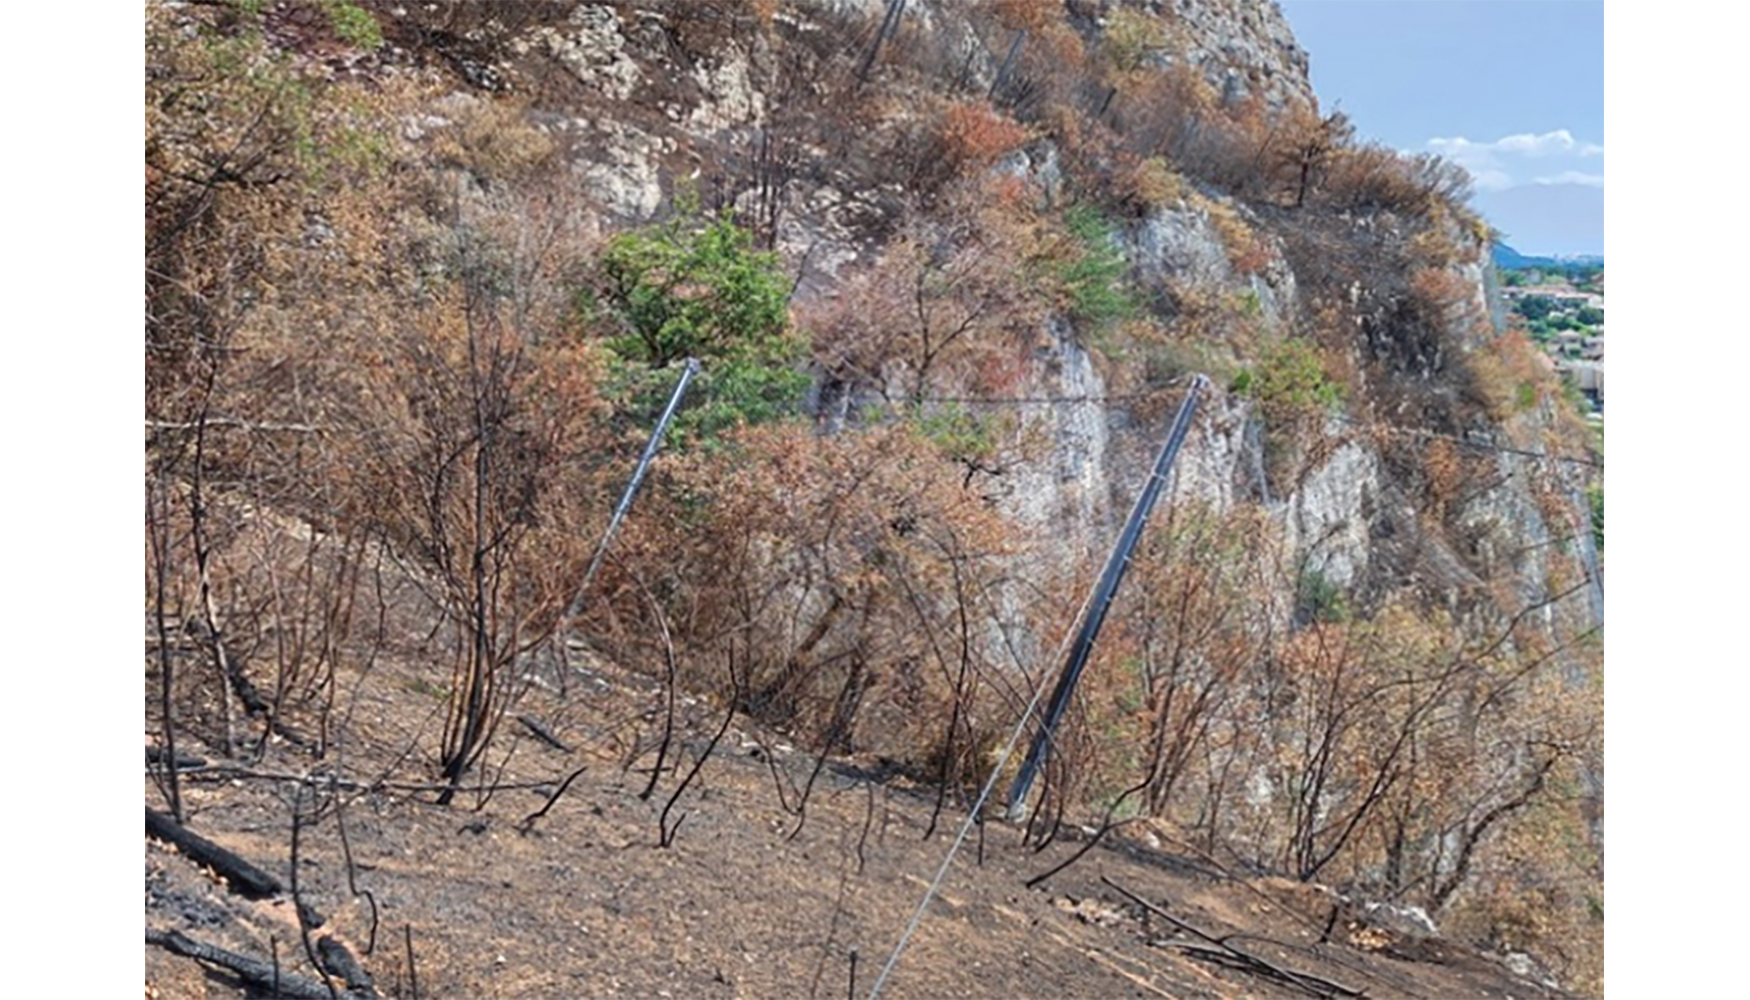 Fig. 19. Vista desde el trasds de la barrera donde se observa la altura que alcanzaron las llamas durante el incendio